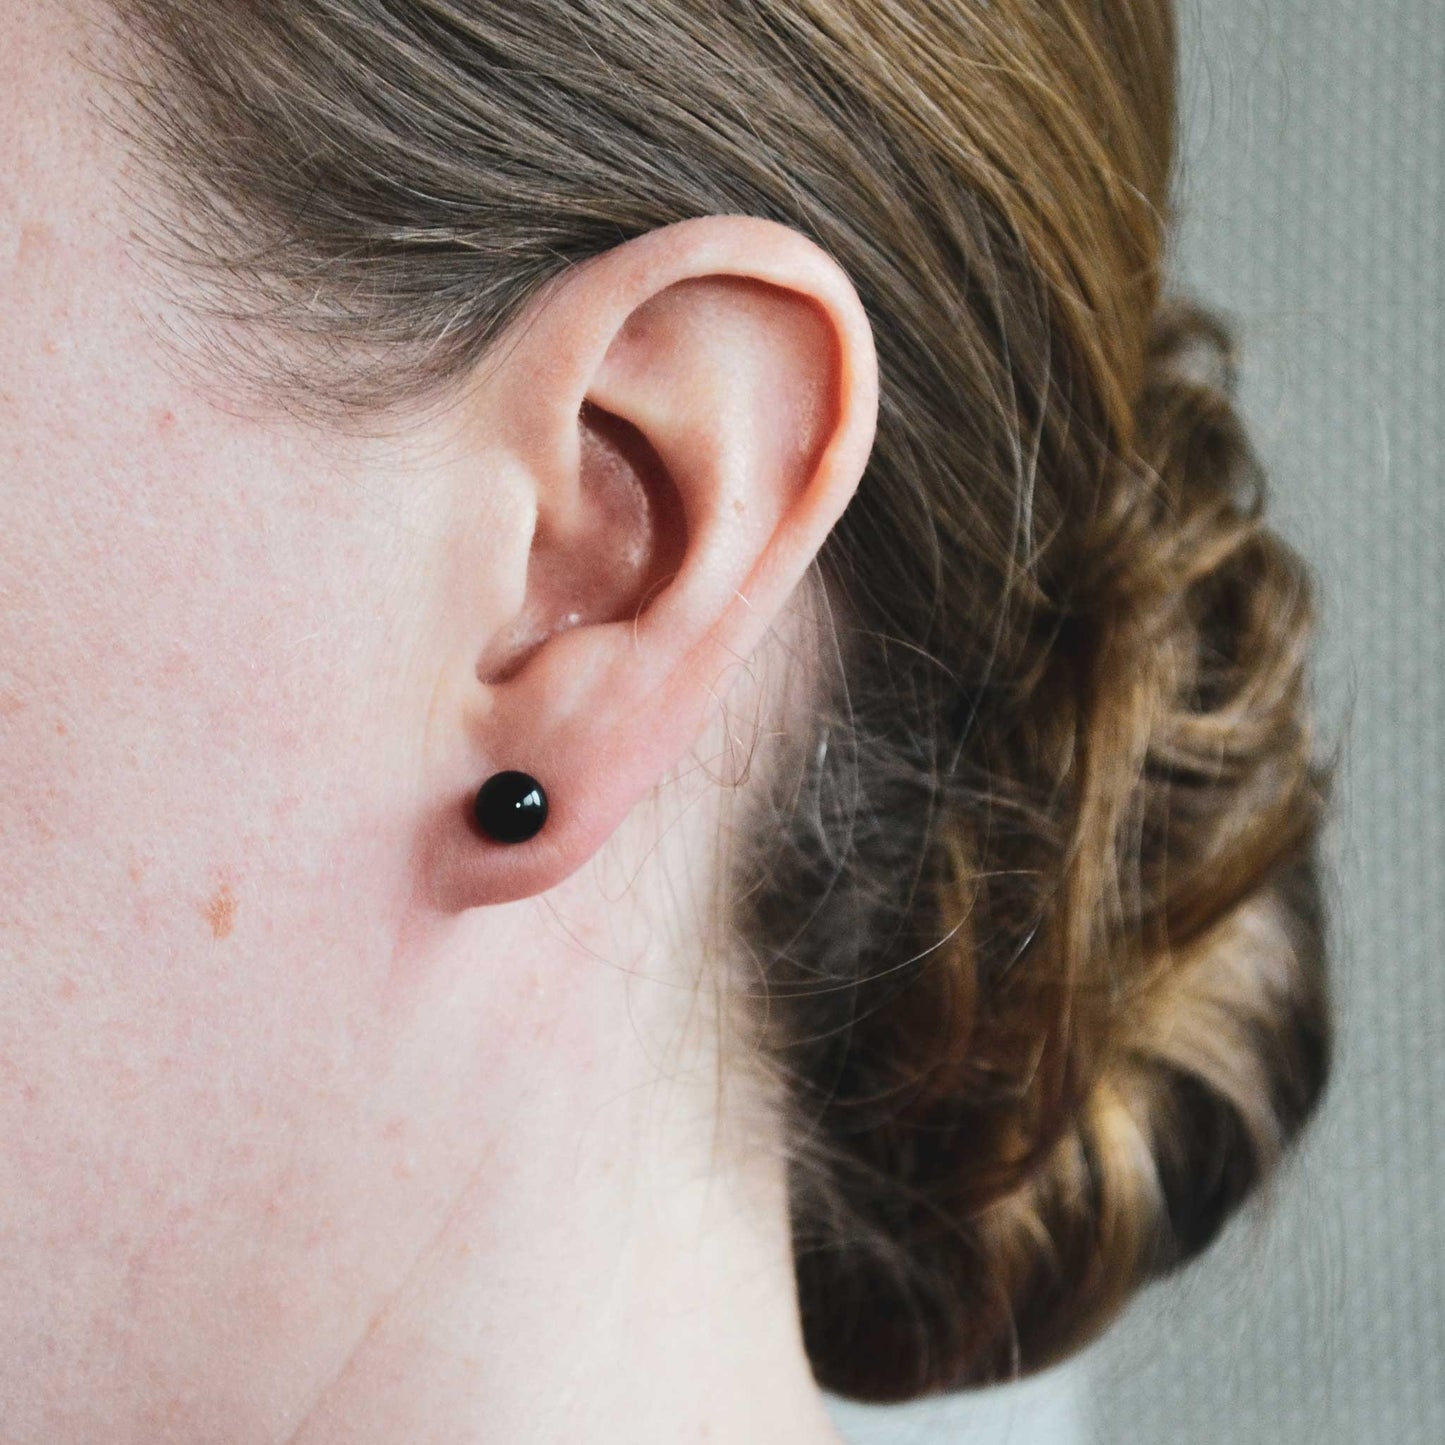 Woman wearing black Onyx ball stud earring in earlobe